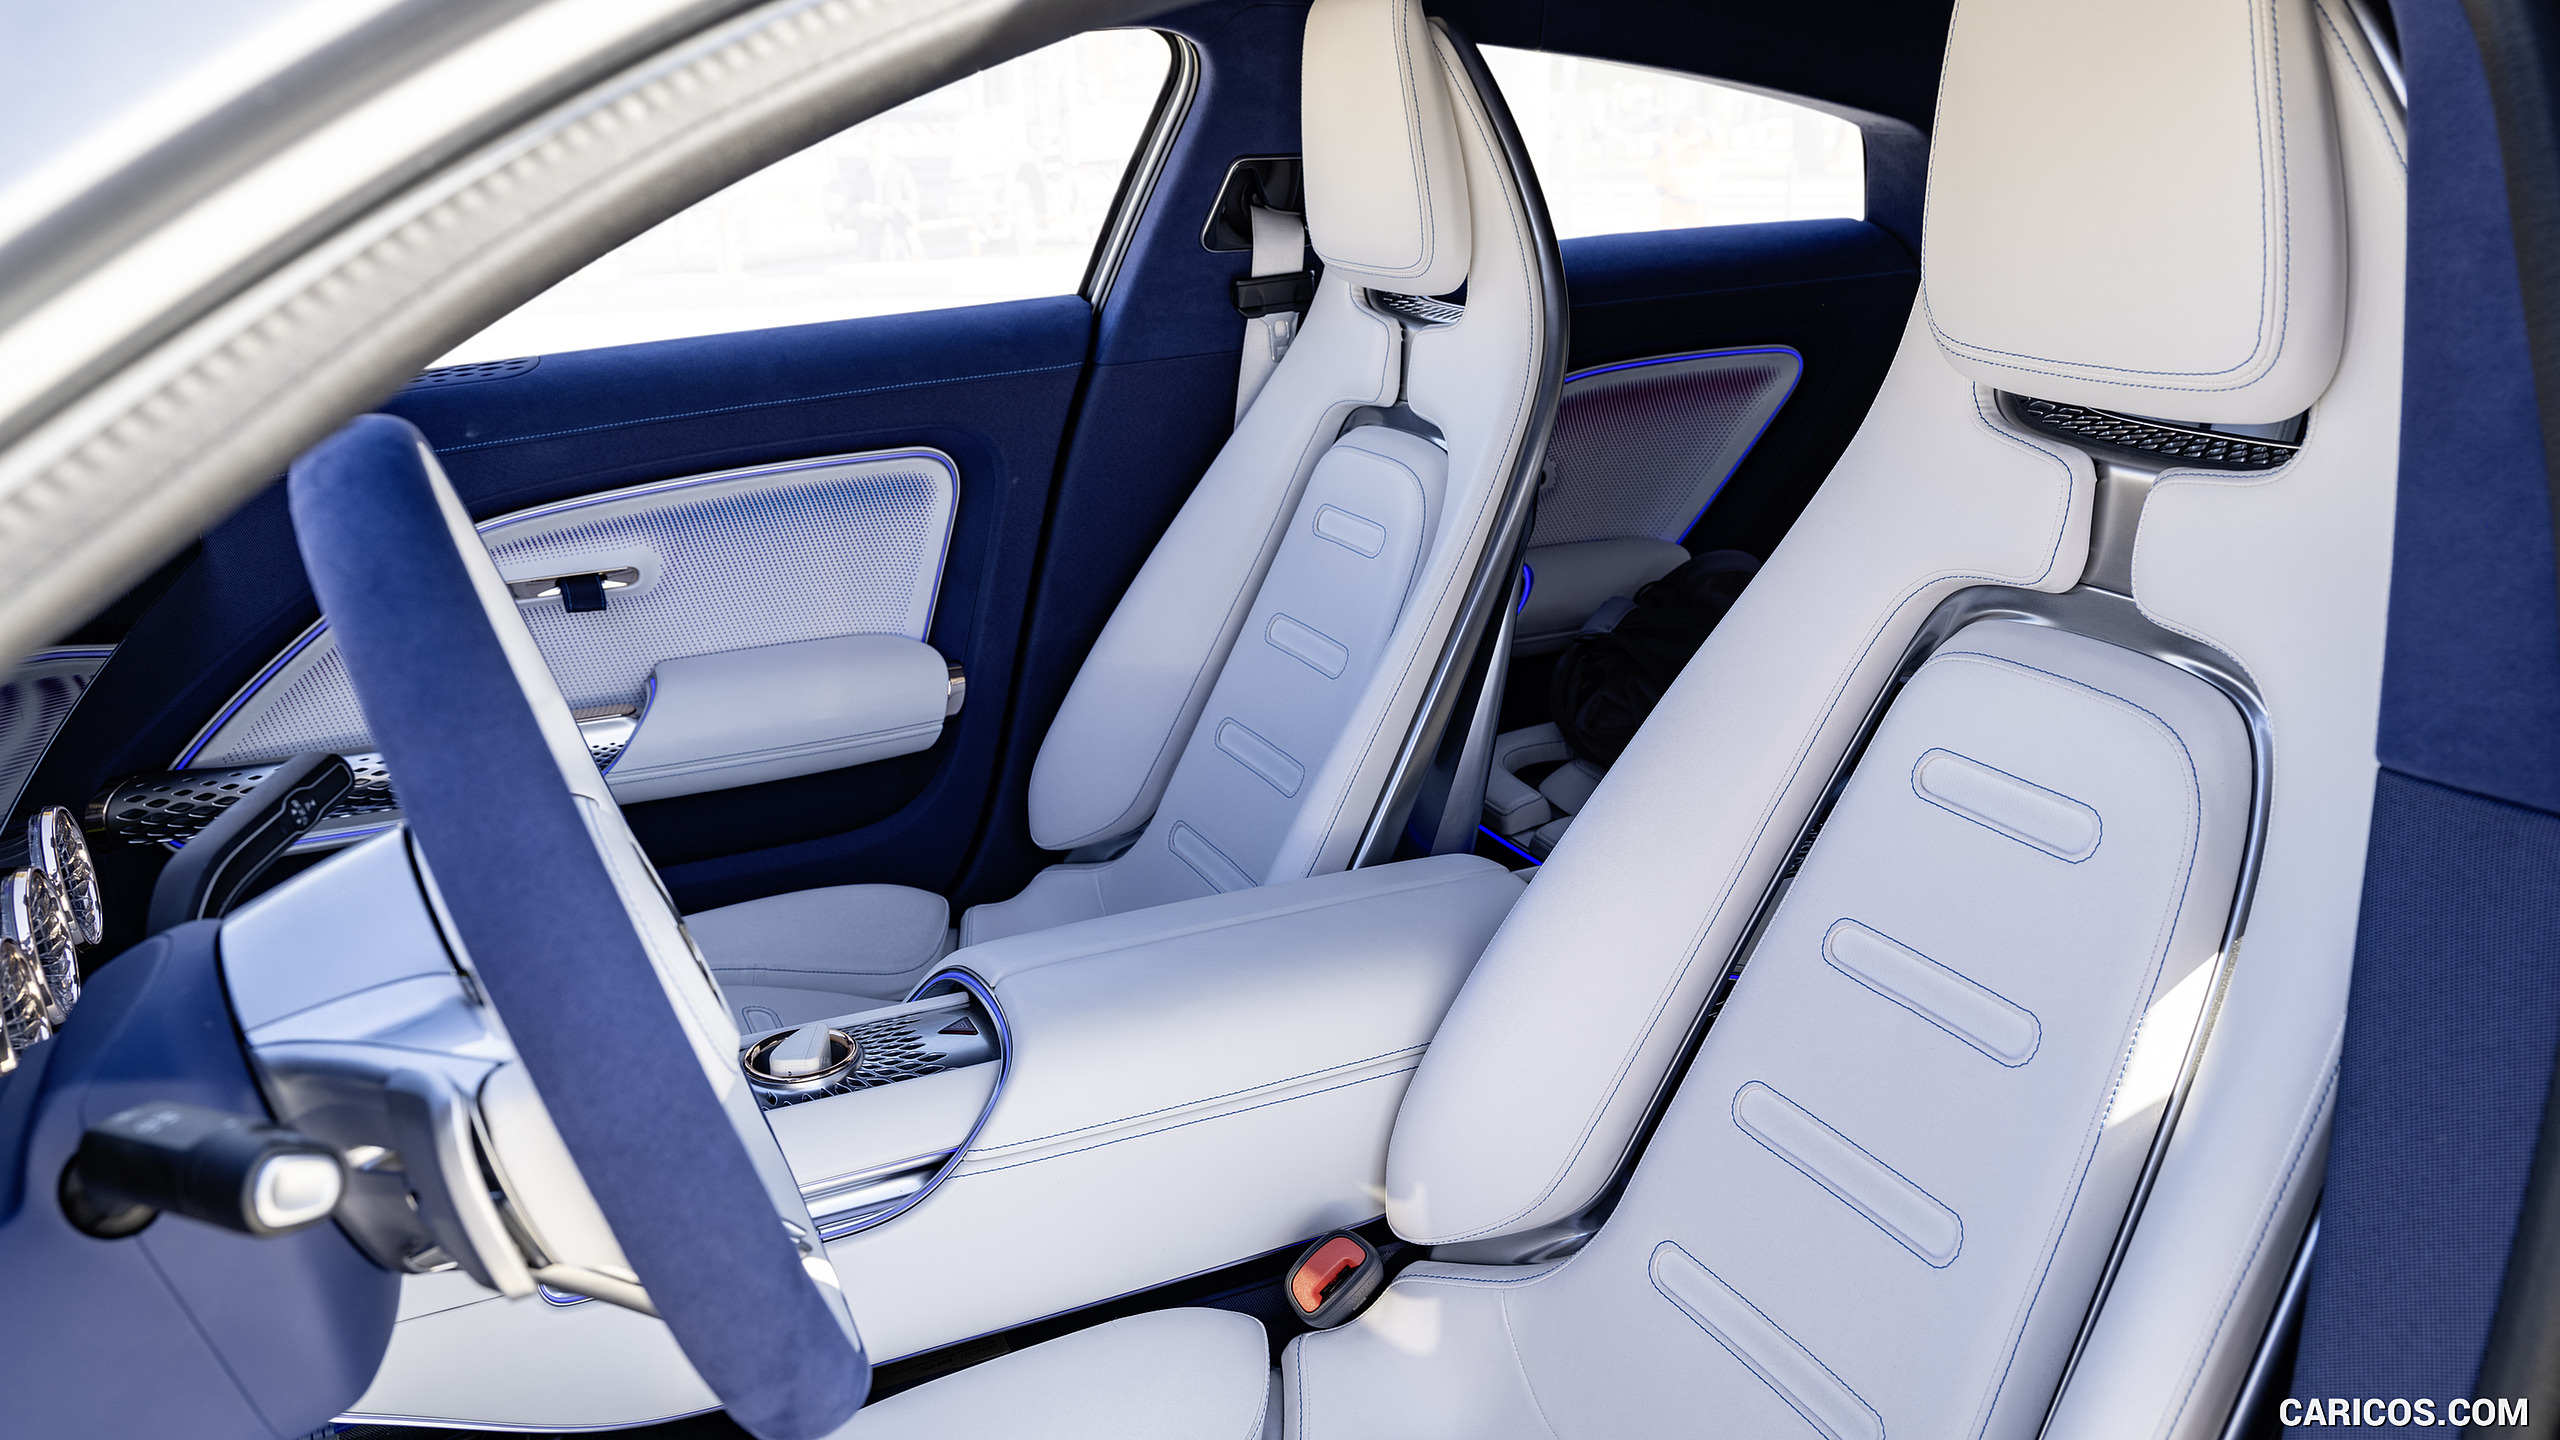 2022 Mercedes-Benz Vision EQXX - Interior, Seats, #136 of 146